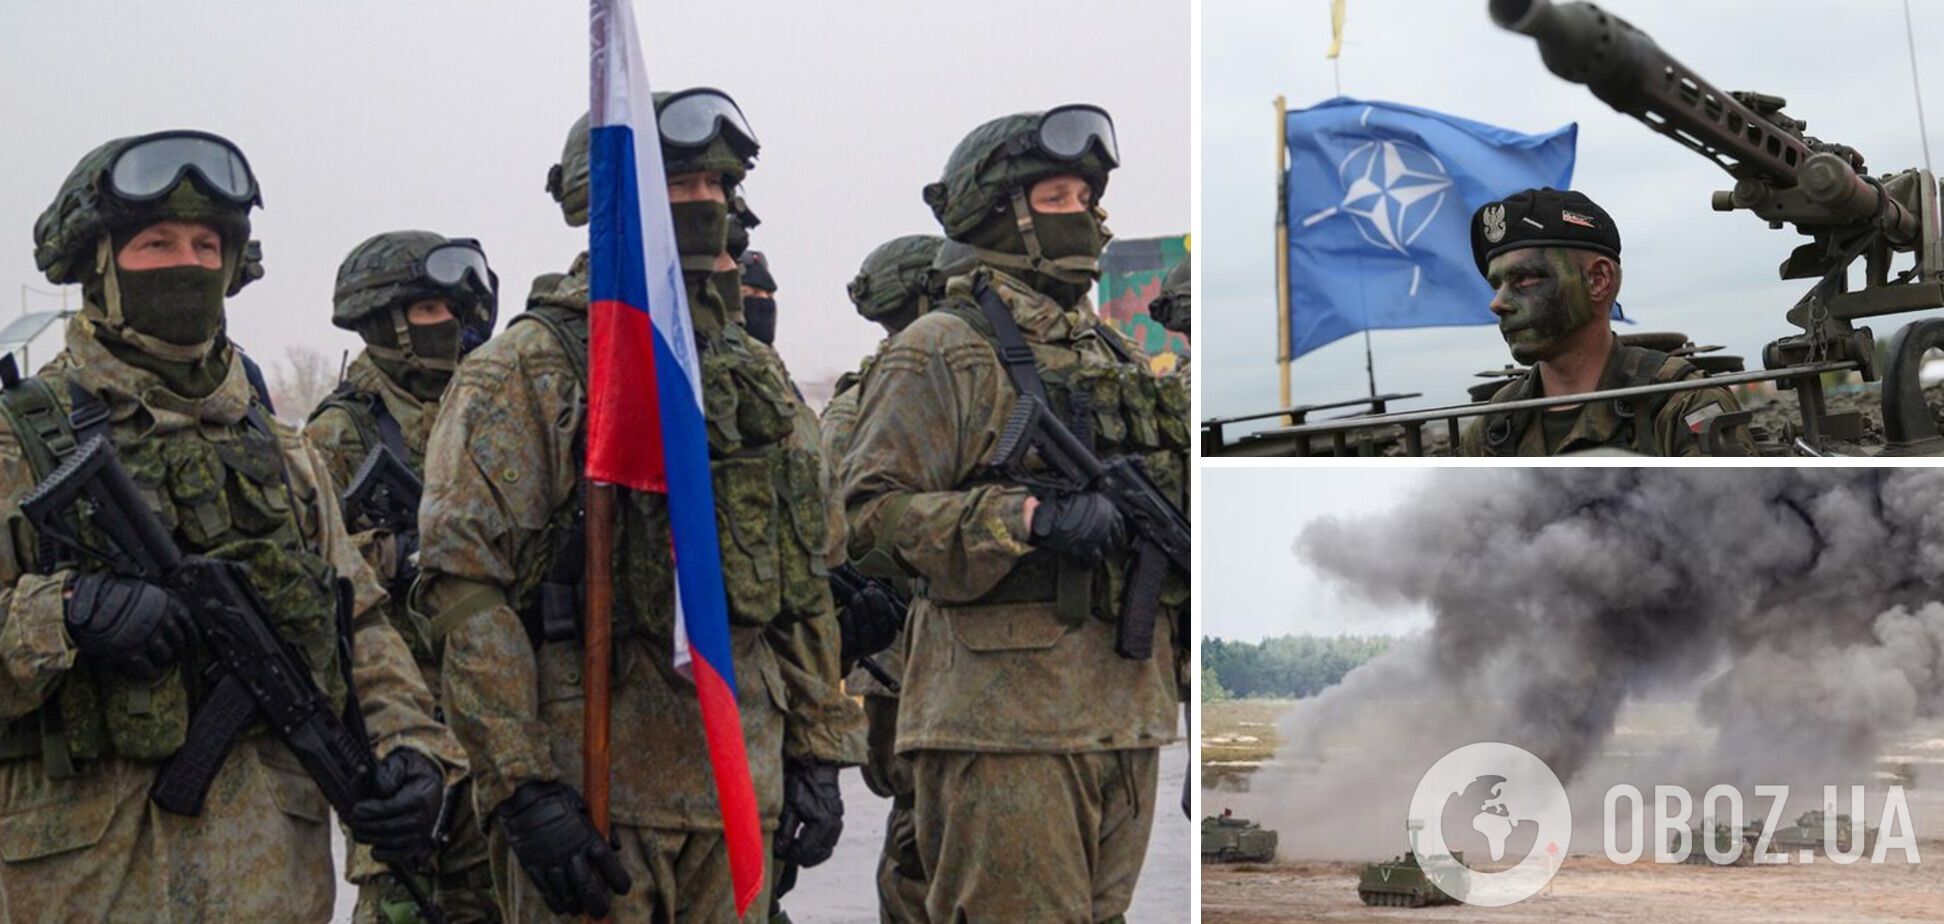 Розвідка Естонії: Росія готується до військового протистояння із Заходом
